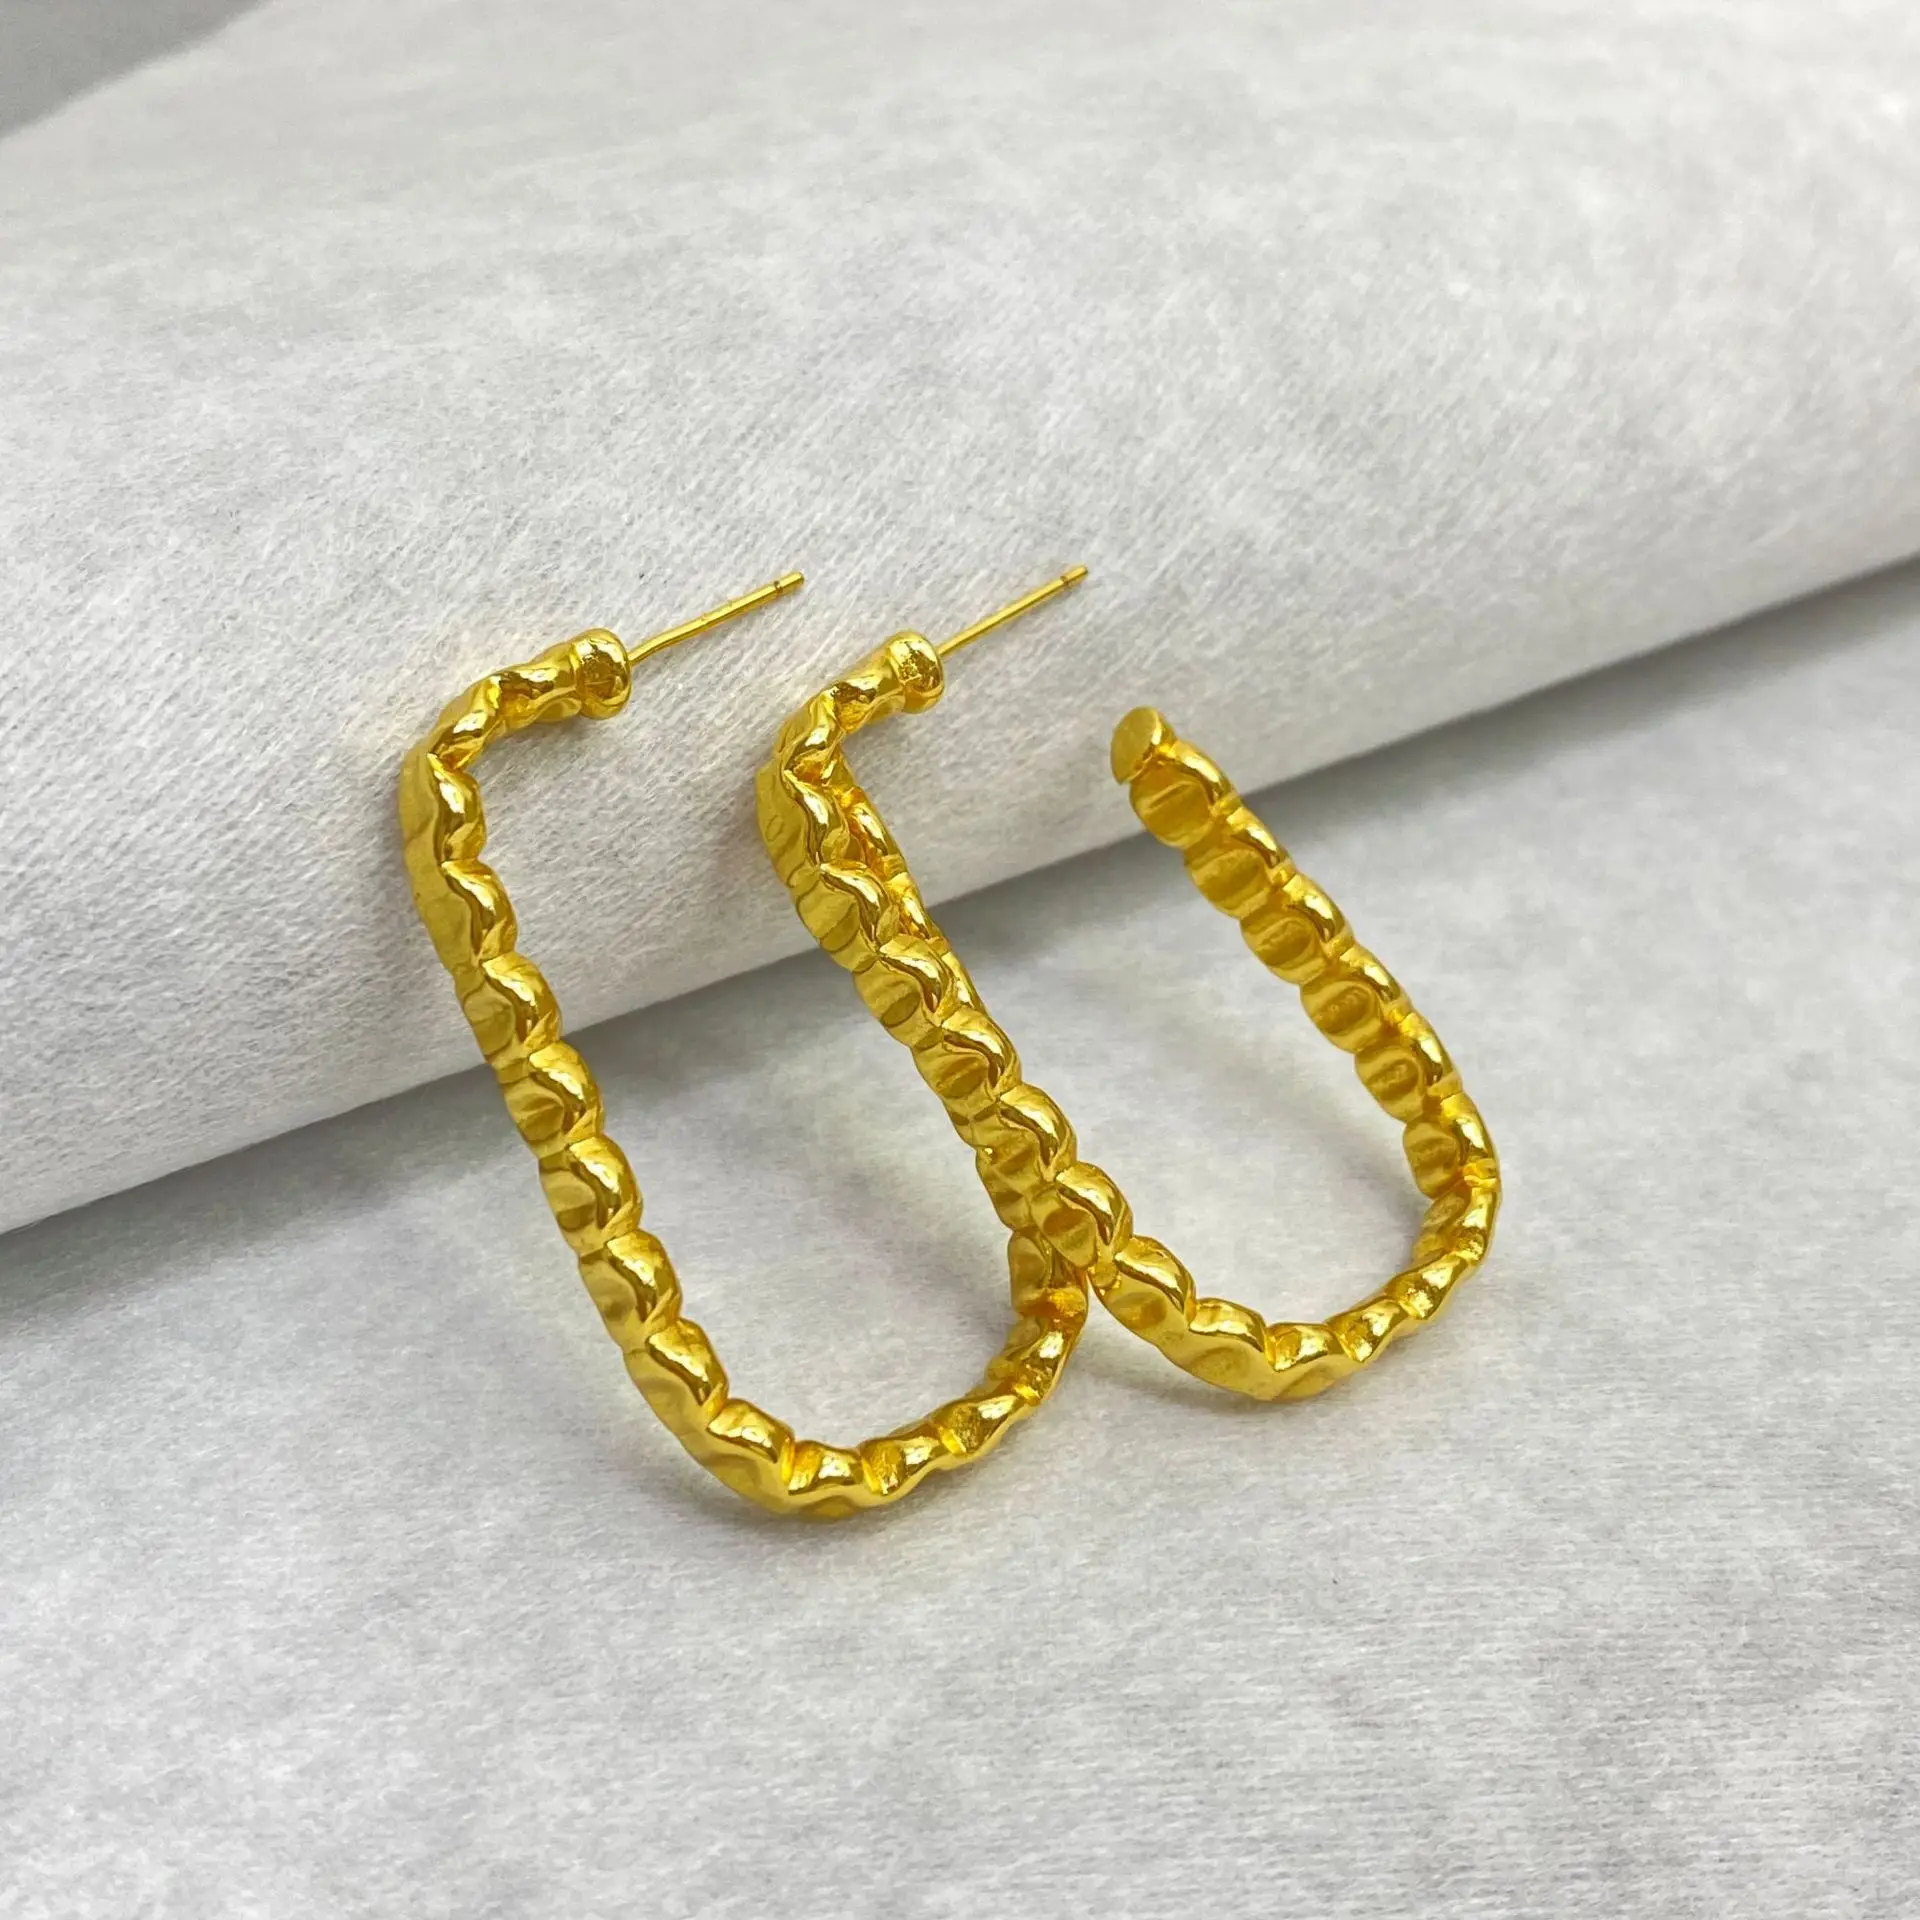 

European Design Geometric Wave Twisted Hoop Earrings 18K Gold Plating Square Hoop Earrings For Women